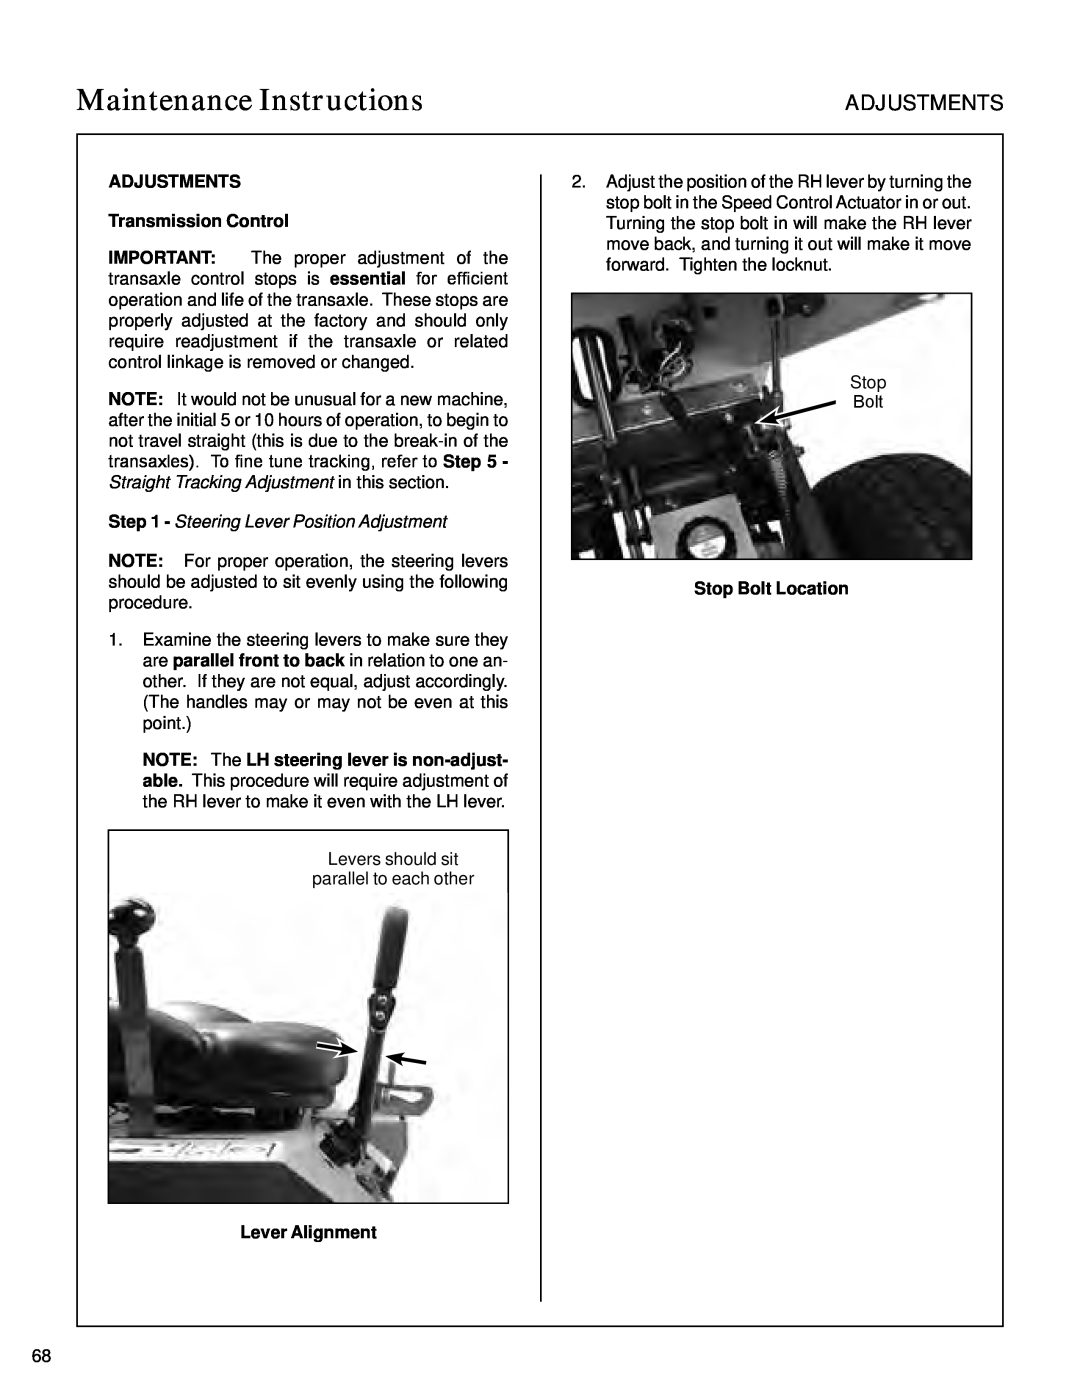 Walker S14 manual Adjustments, ADJUSTMENTS Transmission Control, Steering Lever Position Adjustment, Lever Alignment 